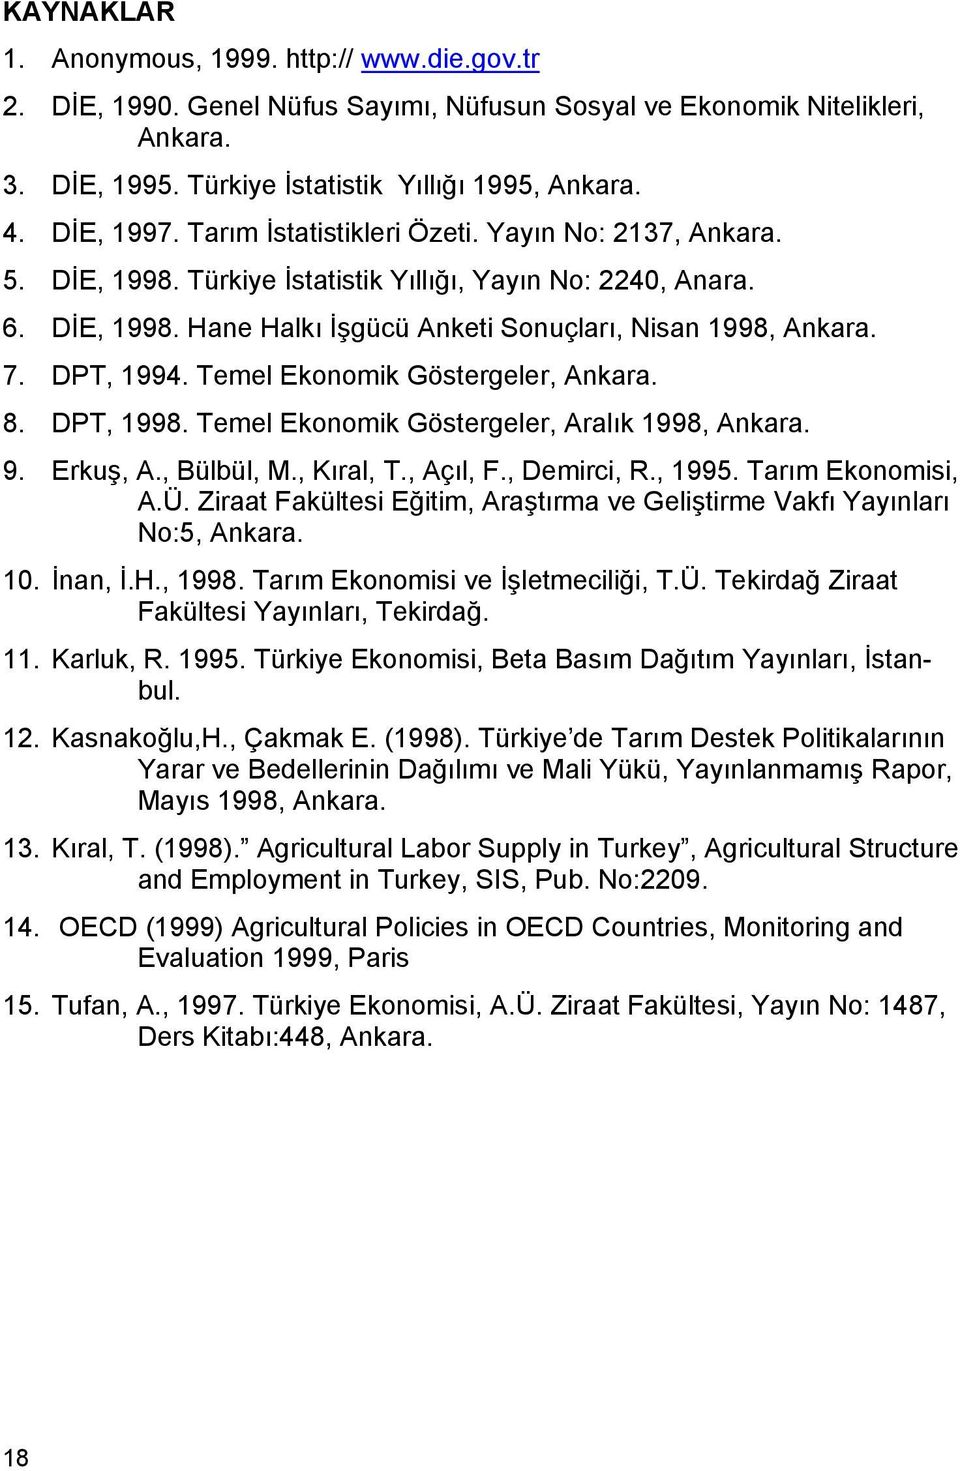 DPT, 1994. Temel Ekonomik Göstergeler, Ankara. 8. DPT, 1998. Temel Ekonomik Göstergeler, Aralık 1998, Ankara. 9. Erkuş, A., Bülbül, M., Kıral, T., Açıl, F., Demirci, R., 1995. Tarım Ekonomisi, A.Ü.